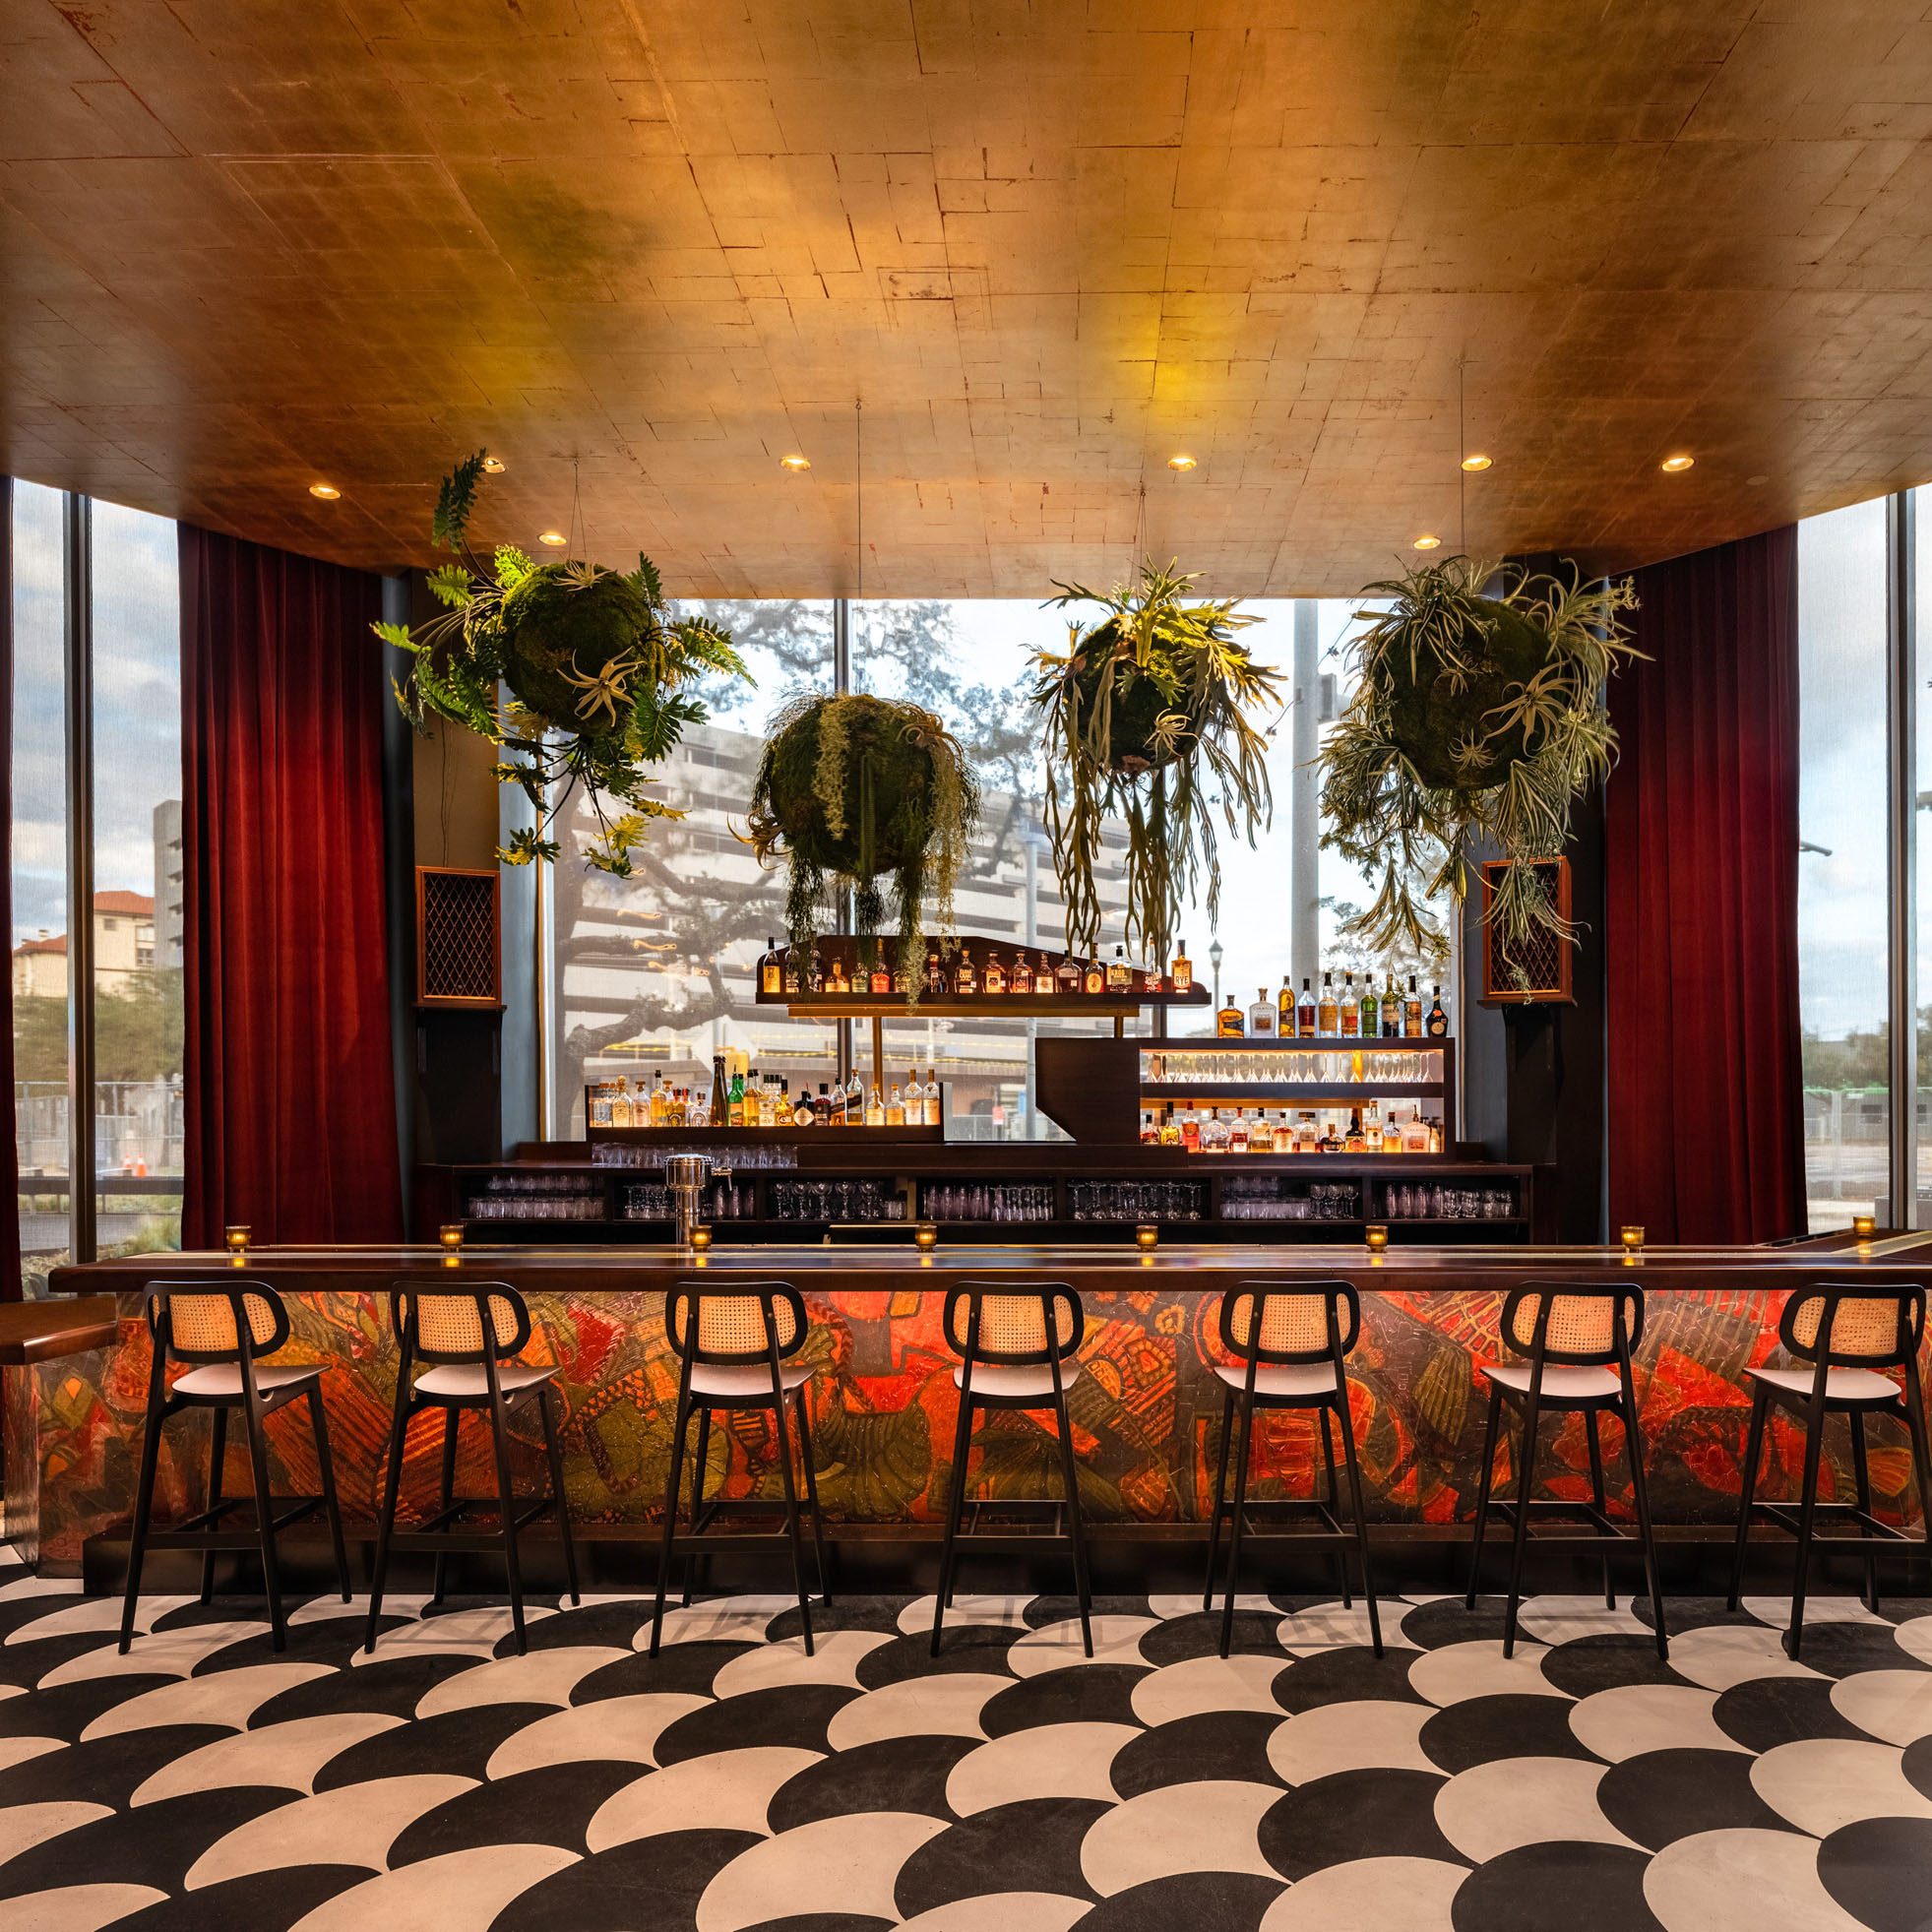 The Brew Monkey Gastro Pub : Time Square Casino - LYT Architecture